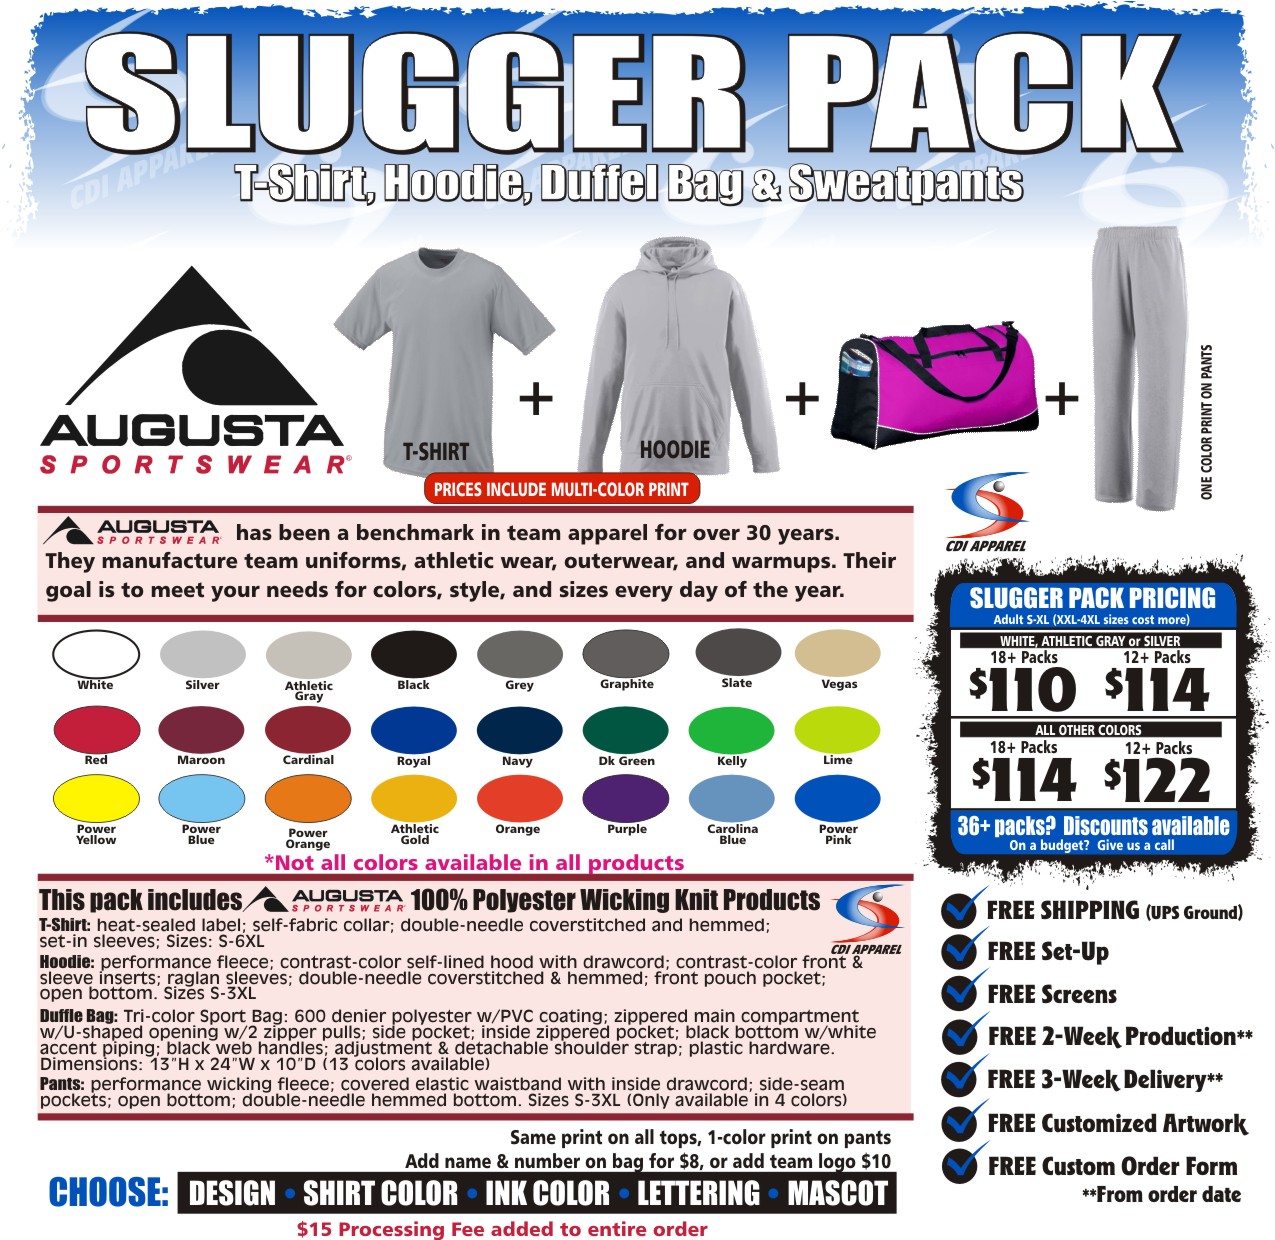 Travel Pack (Slugger Pack) Baseball 2017 Augusta